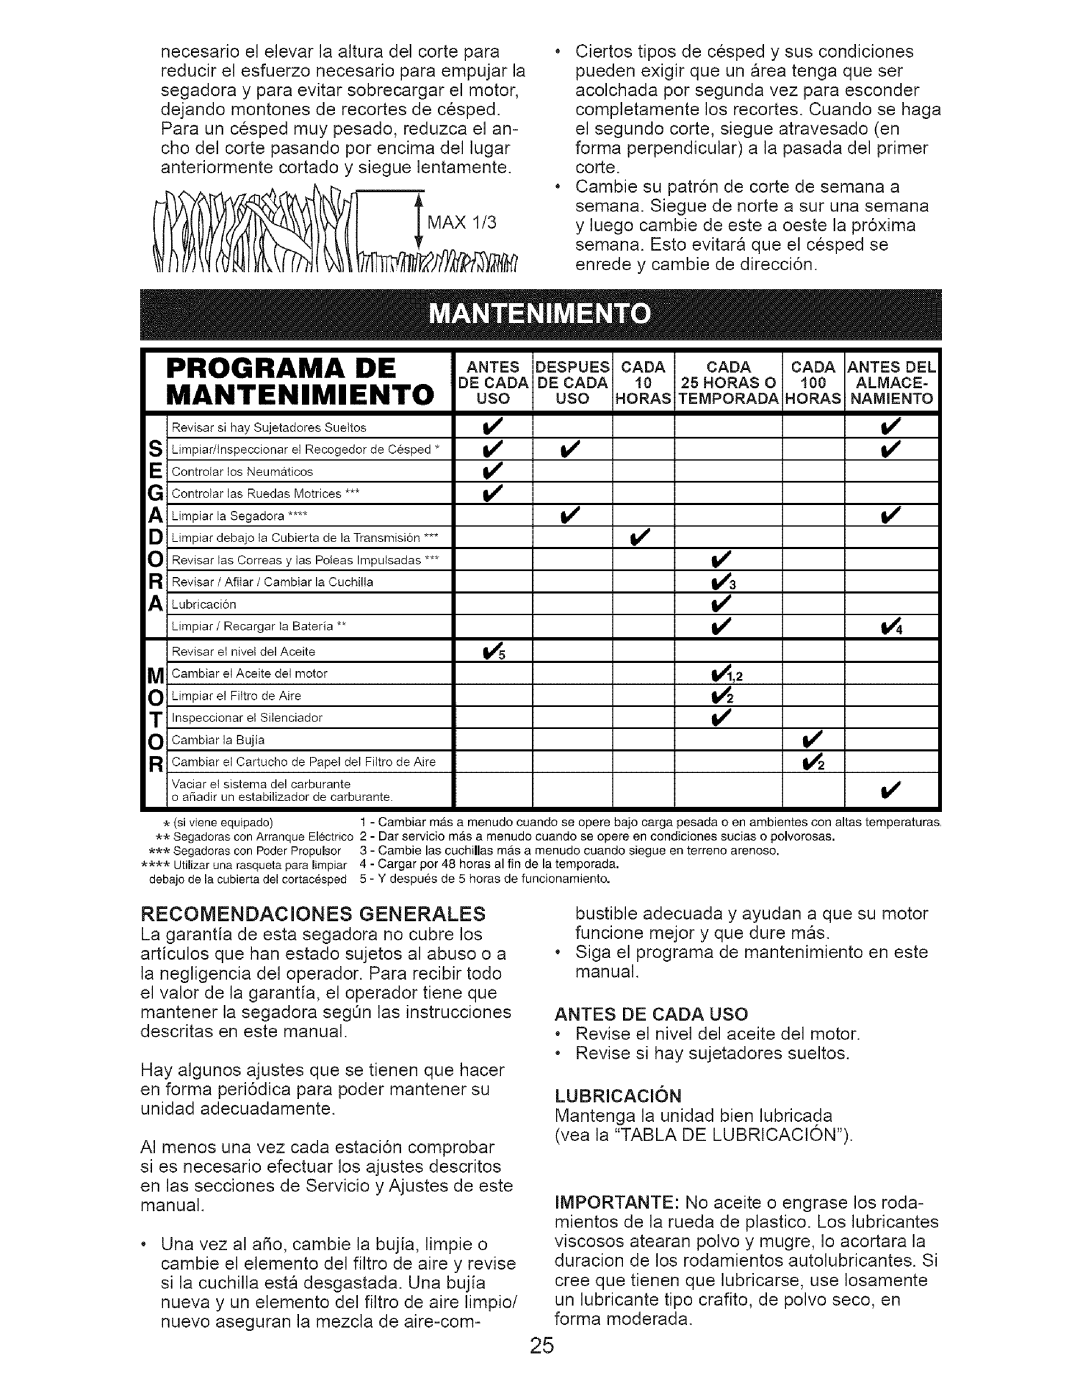 Craftsman 38514 owner manual Programa De Mantenimiento, ANrEsDESPUESCADA CADA CADA.rEsDEL 